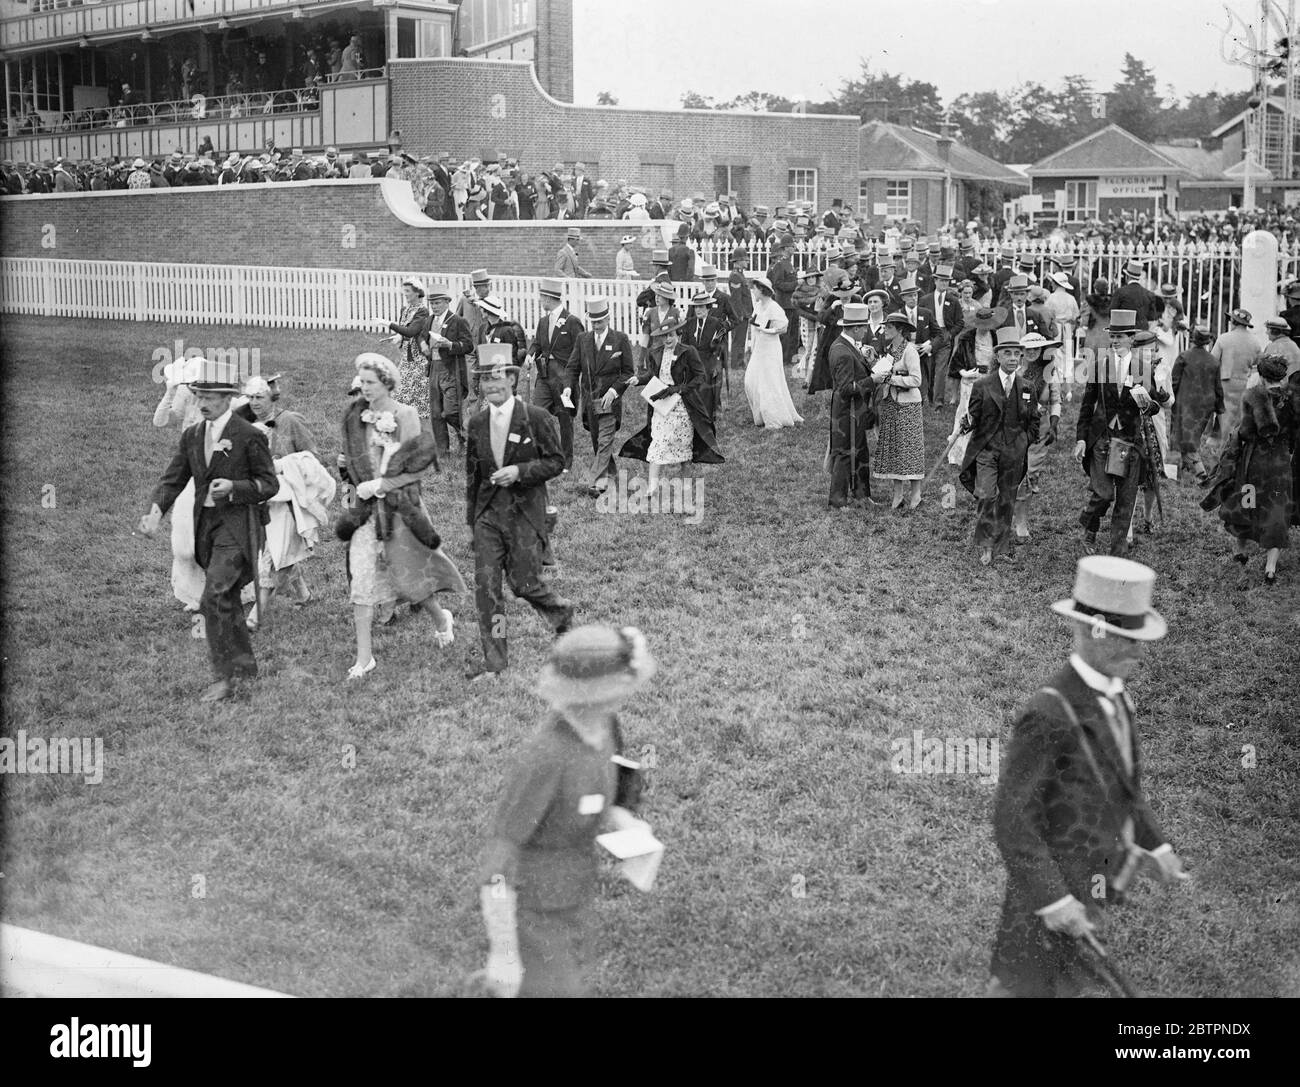 Défilé de mode à Ascot. Spectacles photo : la foule à la mode traversant le cours le deuxième jour de la rencontre d'Ascot. 16 juin 1937 Banque D'Images